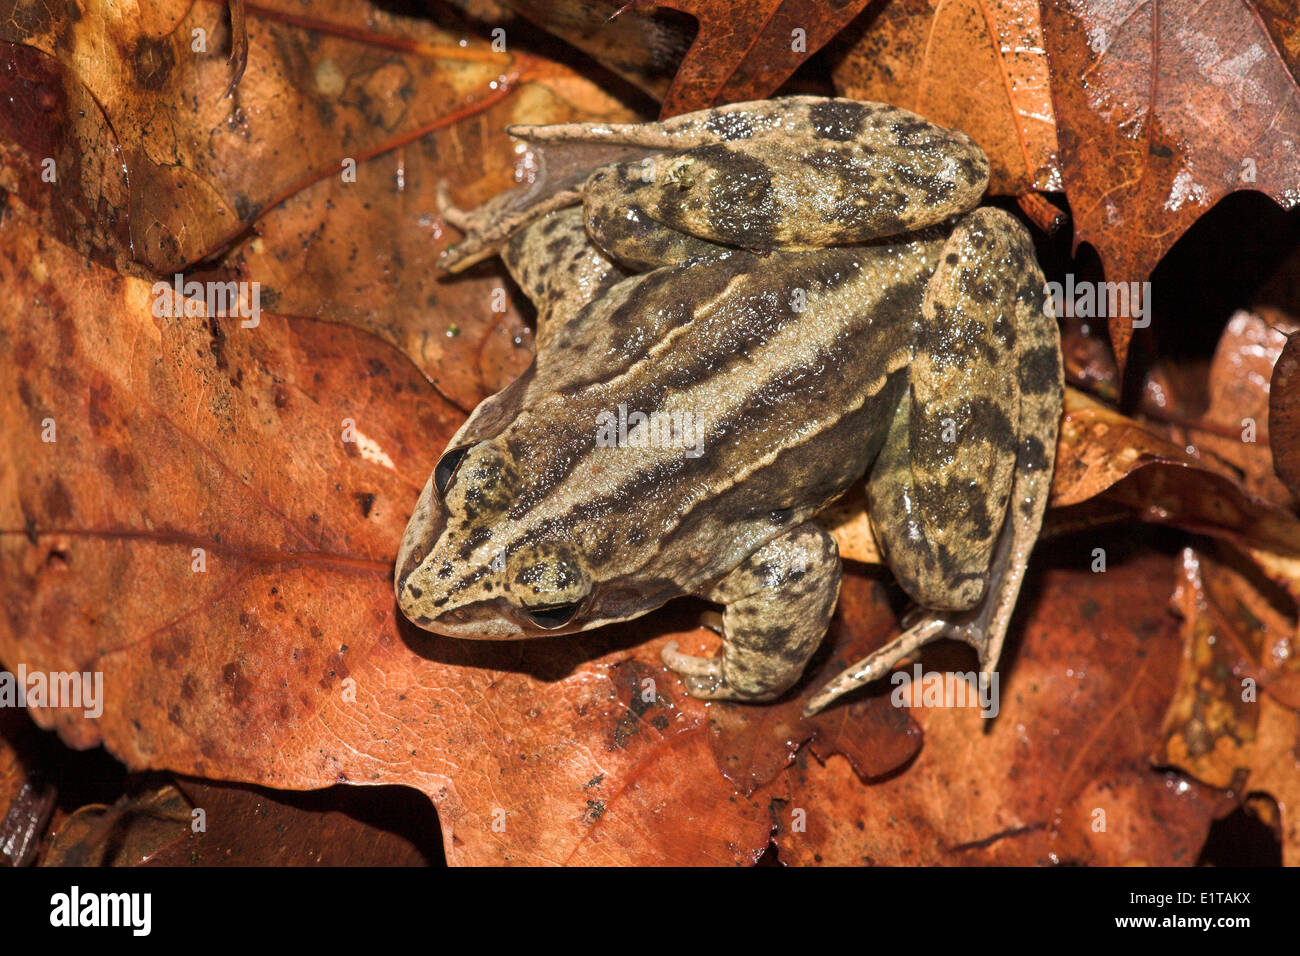 Vista dorsale di una rana di moro con la sua dorsalstripe ben visibili sulla parte superiore delle foglie redbrown Foto Stock